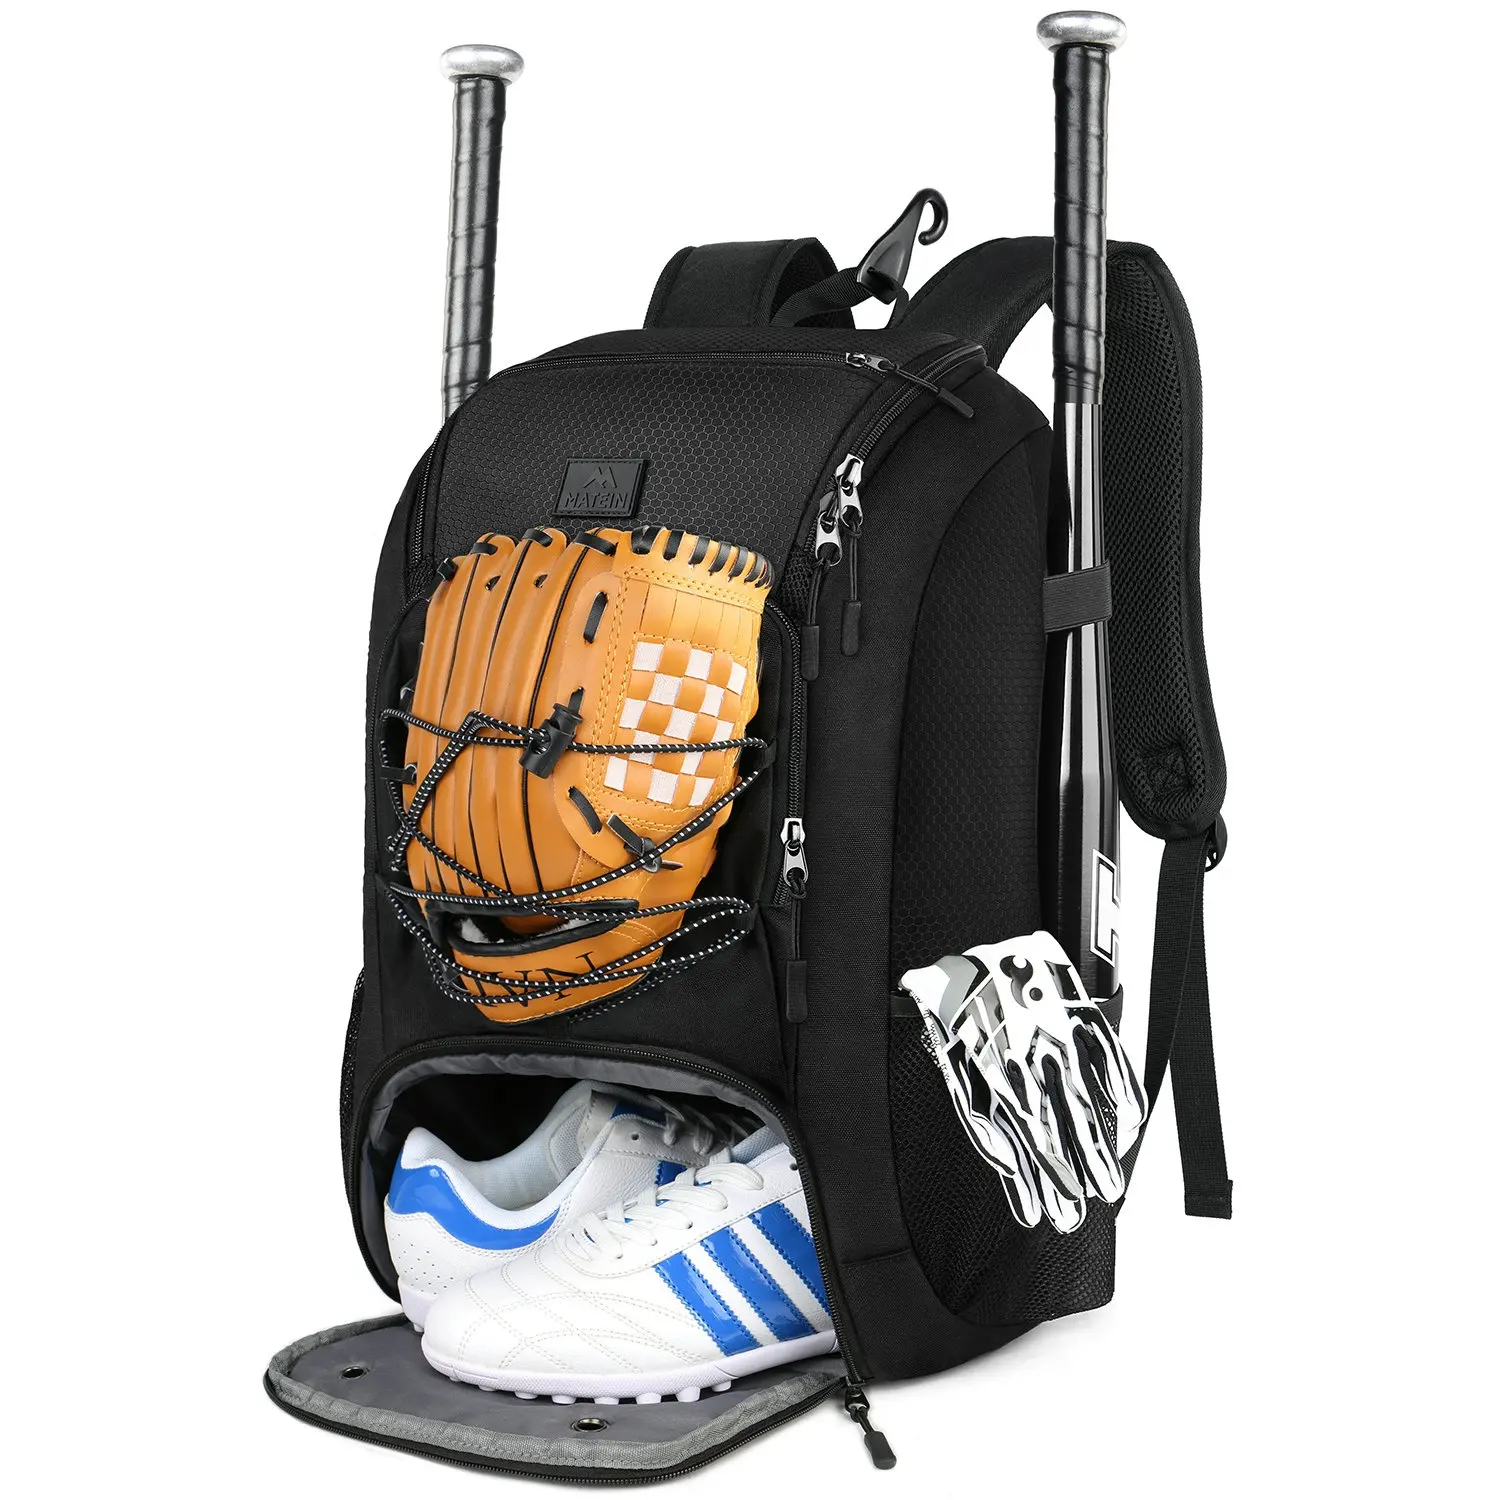 MATEIN ऑक्सफोर्ड सॉफ्टबॉल बल्ले बैग बेसबॉल युवा लड़कों और वयस्क के लिए जूते के डिब्बे के साथ बैग बैग आउटडोर यात्रा खेल